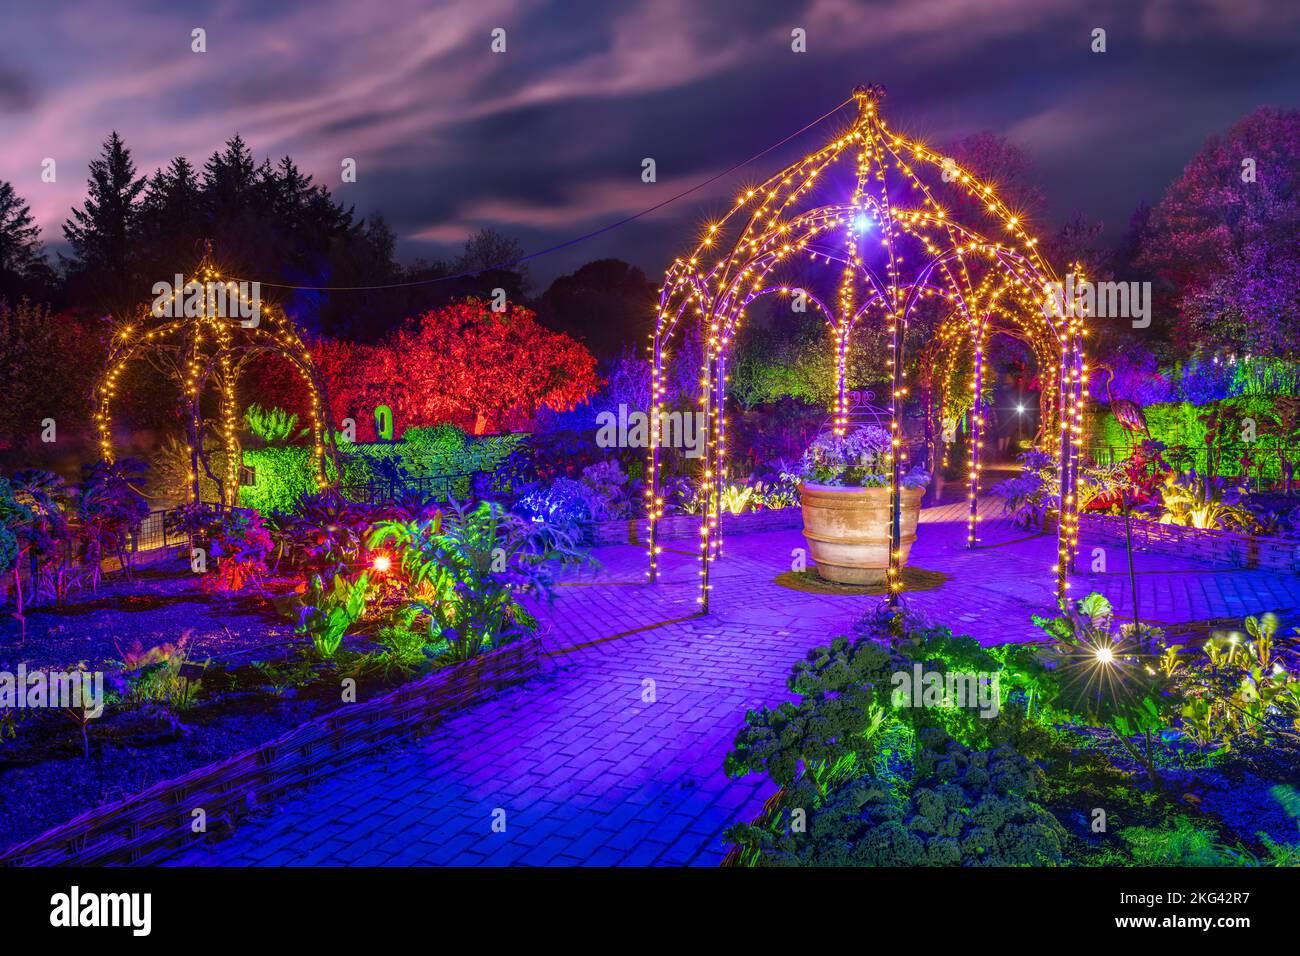 RHS Rosemoor Glow Illuminations. Die herrlichen Bäume, Sträucher, Wasserfiguren und Skulpturen von Rosemoor, die von einem spektakulären, sich verändernden Licht erleuchtet werden Stockfoto